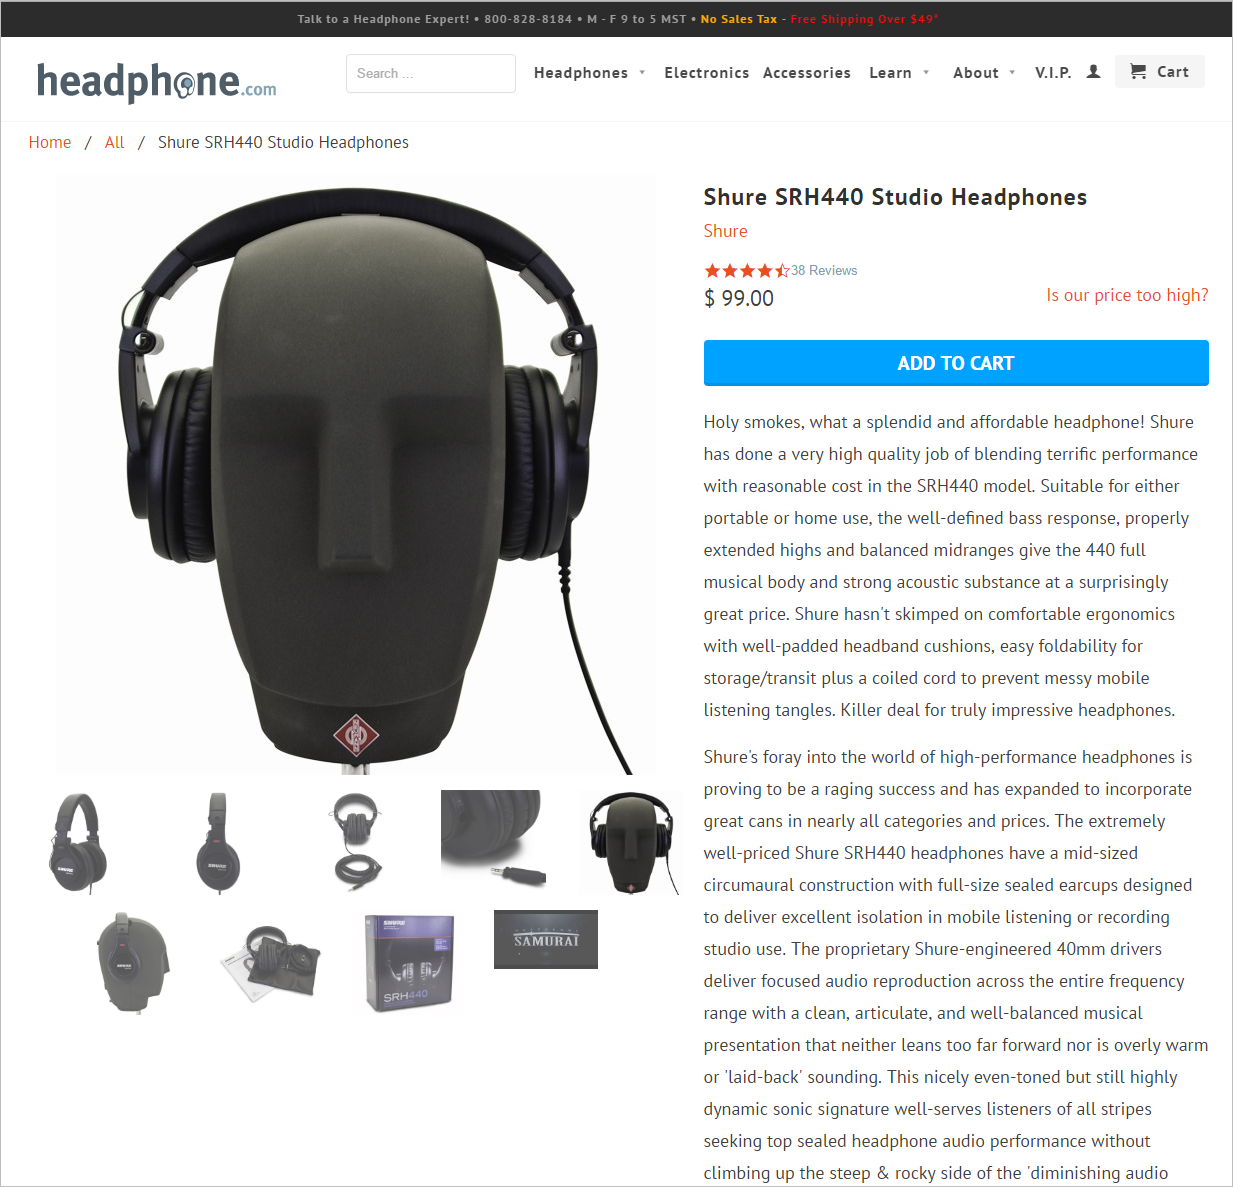 Описание студийных наушников Shure SRH440 на сайте Headphone.com представляет из себя качественный контент, но длина и представление информации (несколько параграфов в узкой колонке), затрудняет нахождение и просмотр важной информации.